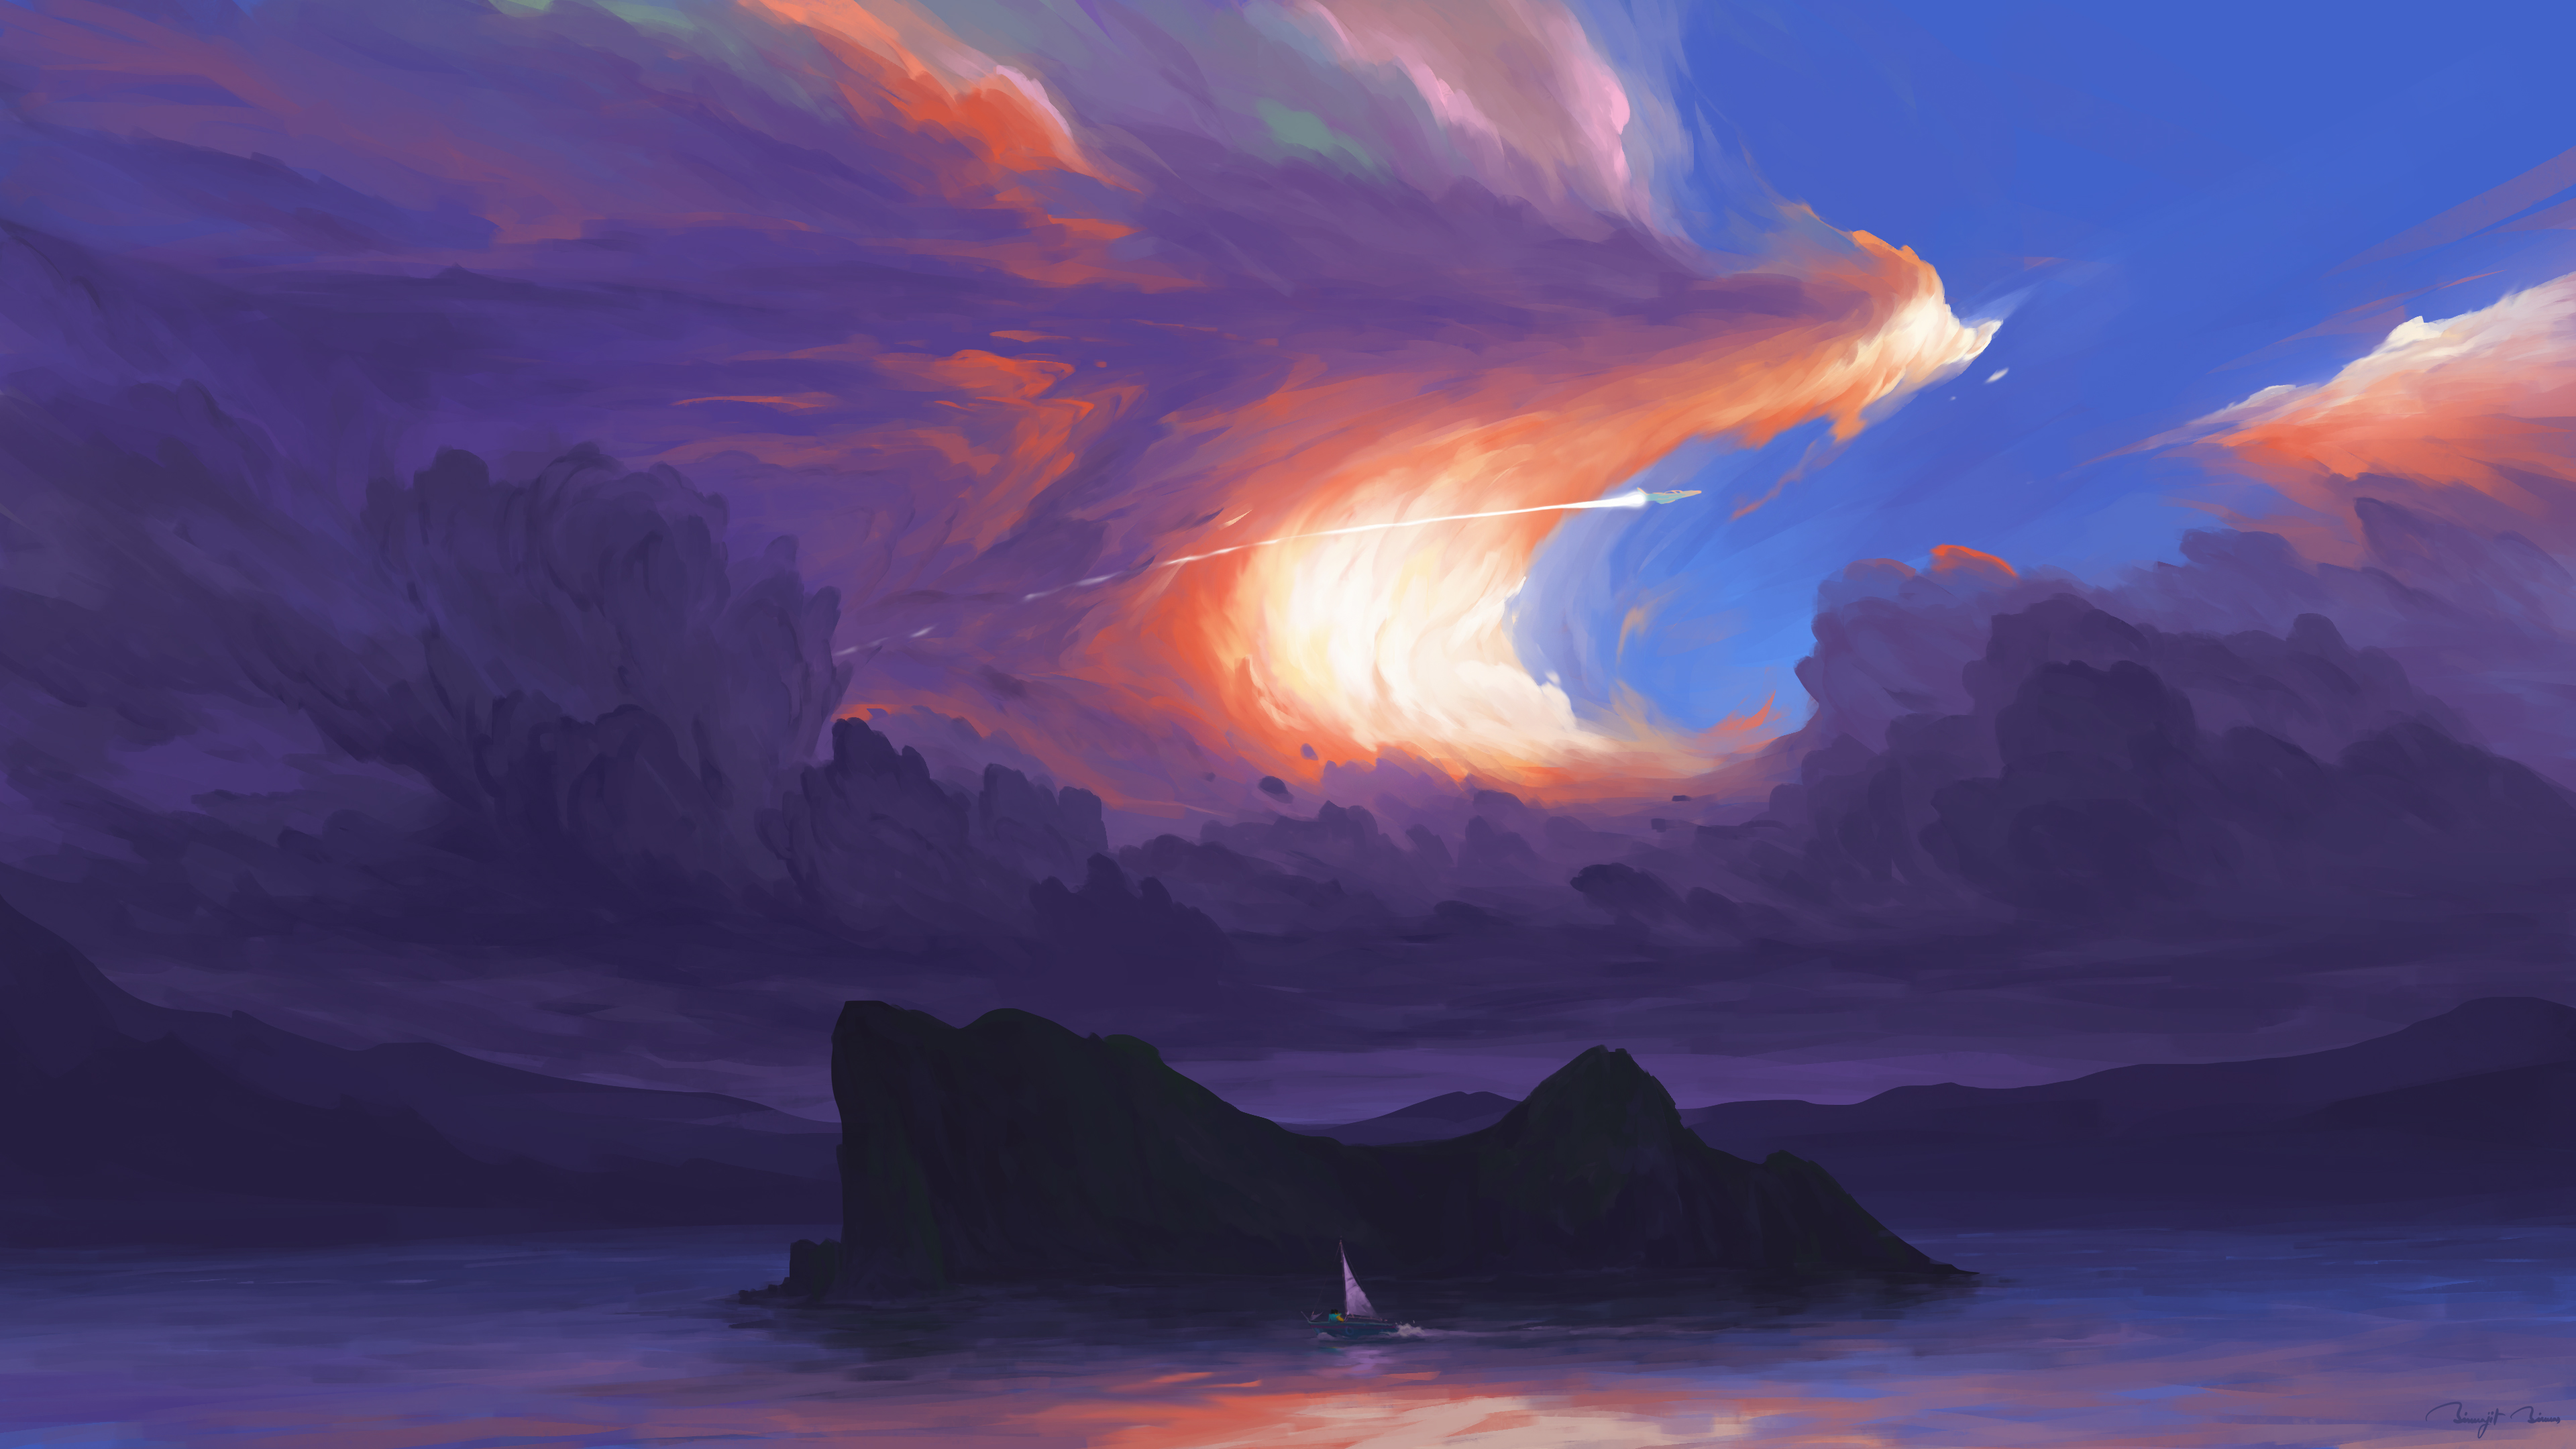 BisBiswas Digital Art Artwork Illustration Landscape Clouds Sea Water Mountains Sky Boat Jet Fighter 3840x2160